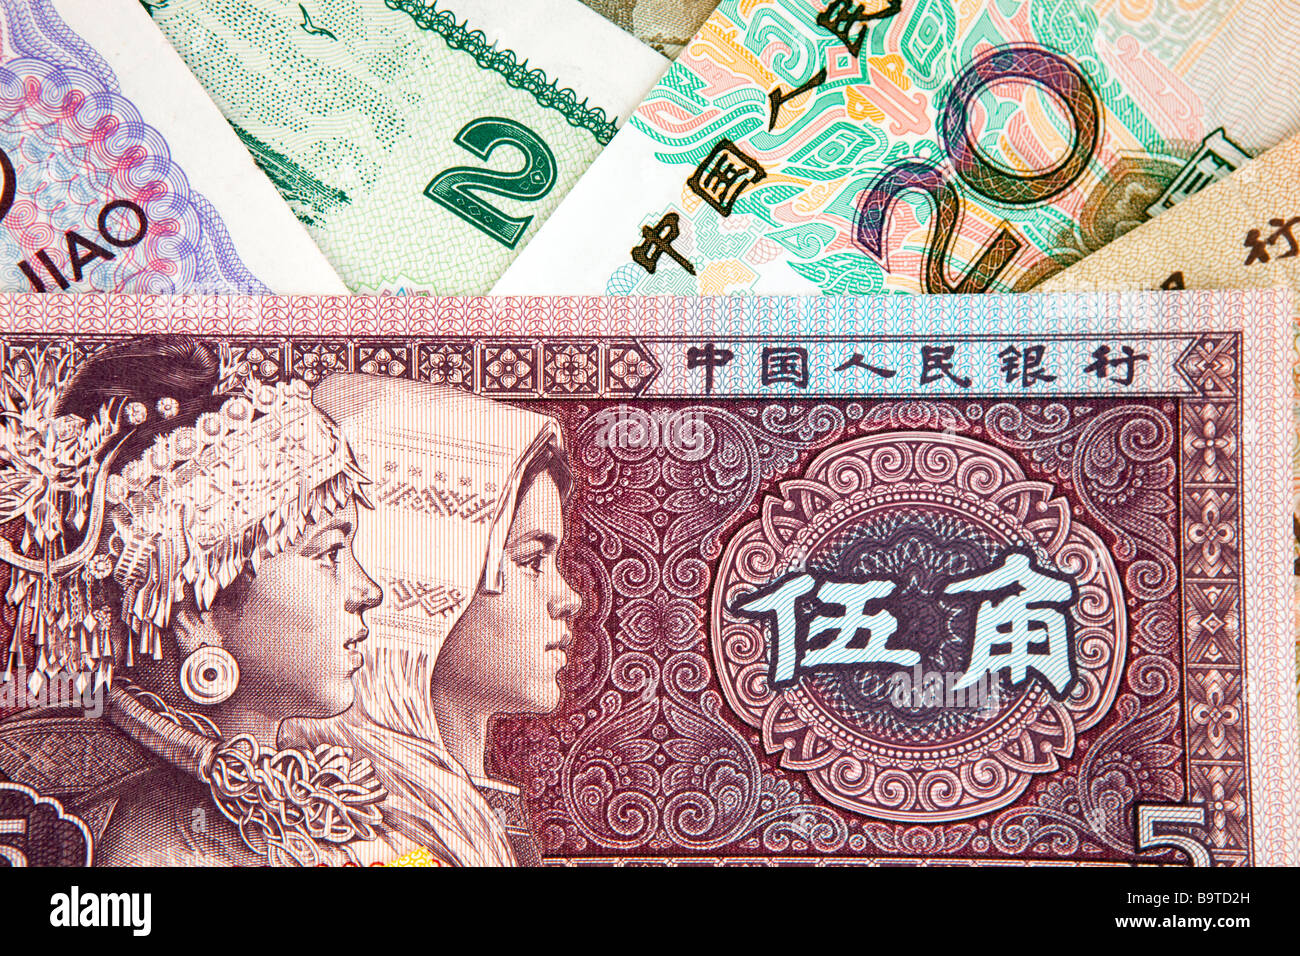 Geld Währung Detail des chinesischen Banknoten Stockfoto